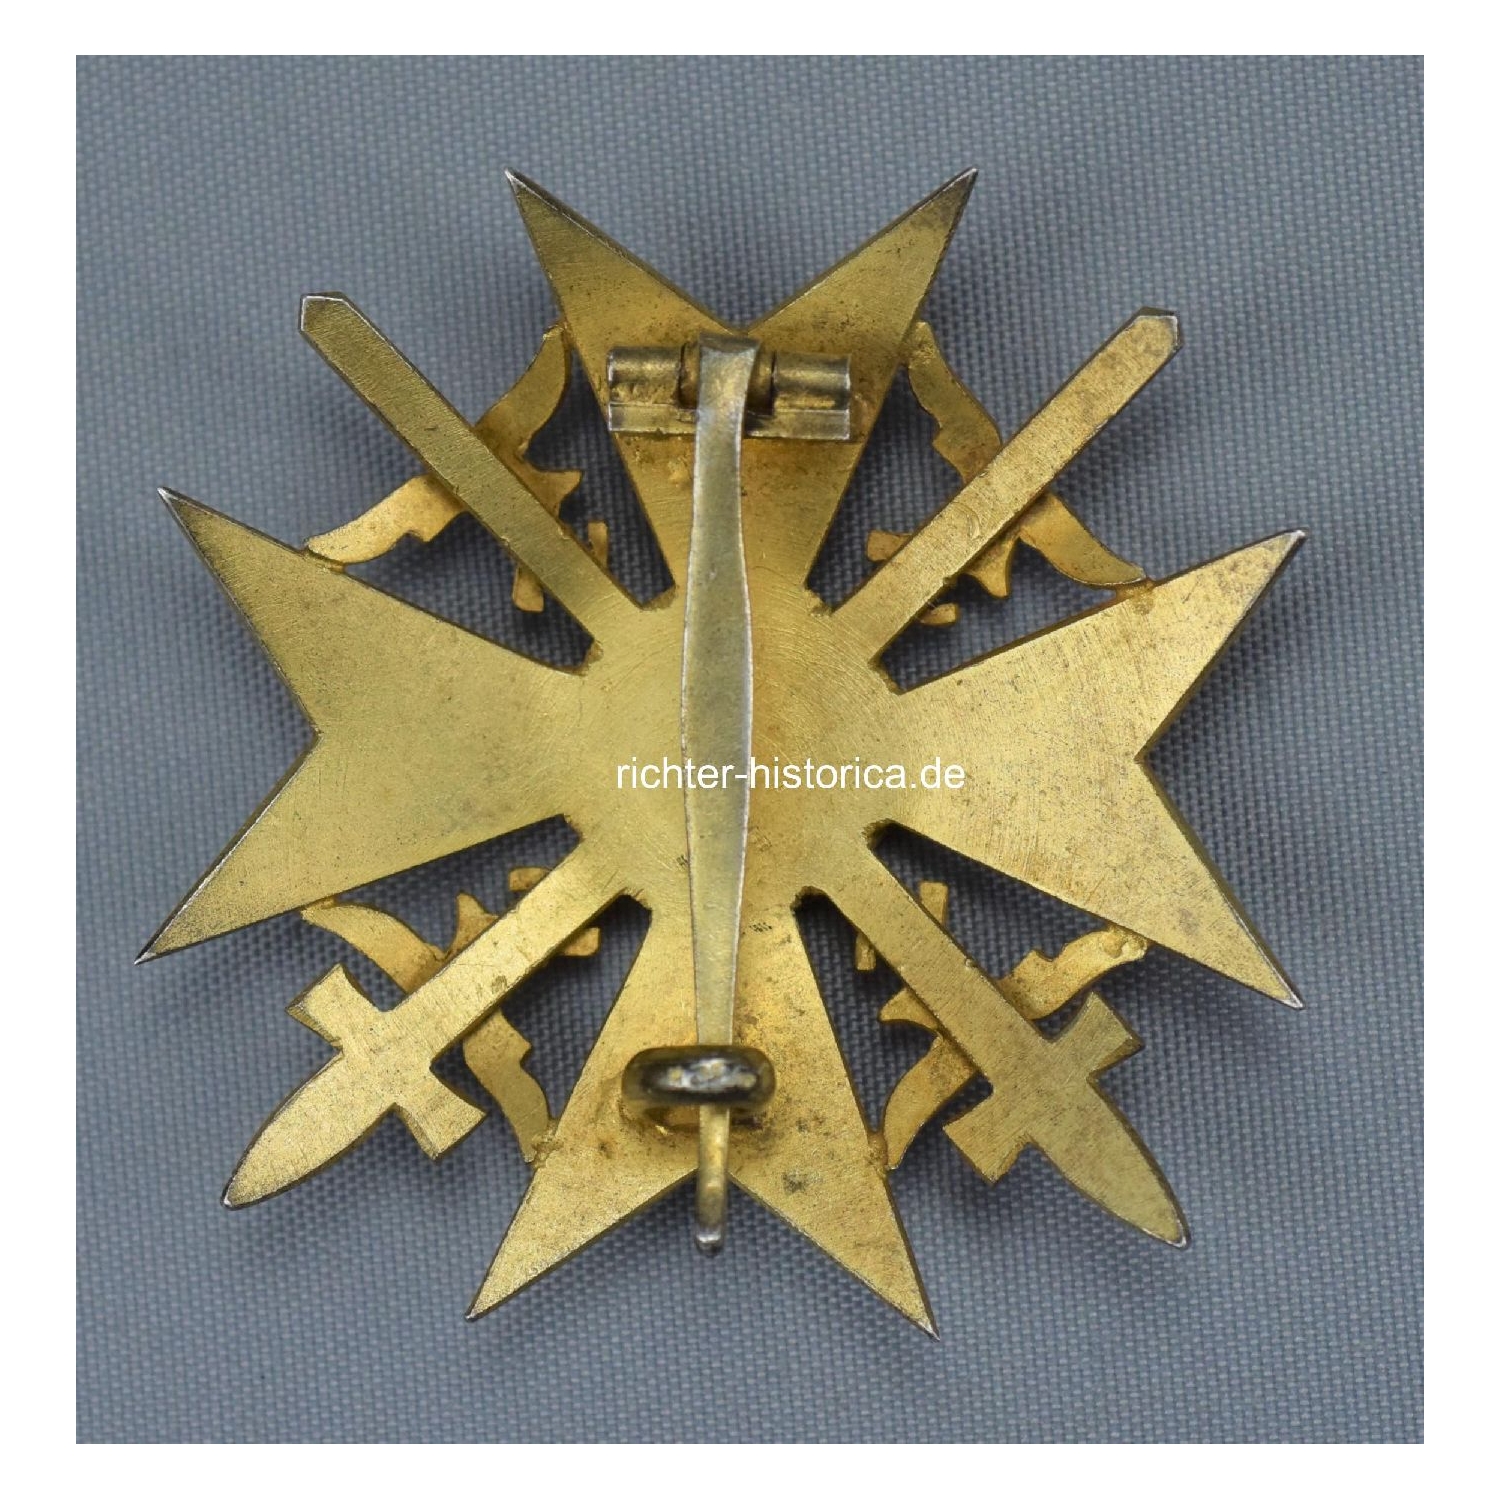 Spanienkreuz in Gold mit Schwertern "900" Juncker, Berlin